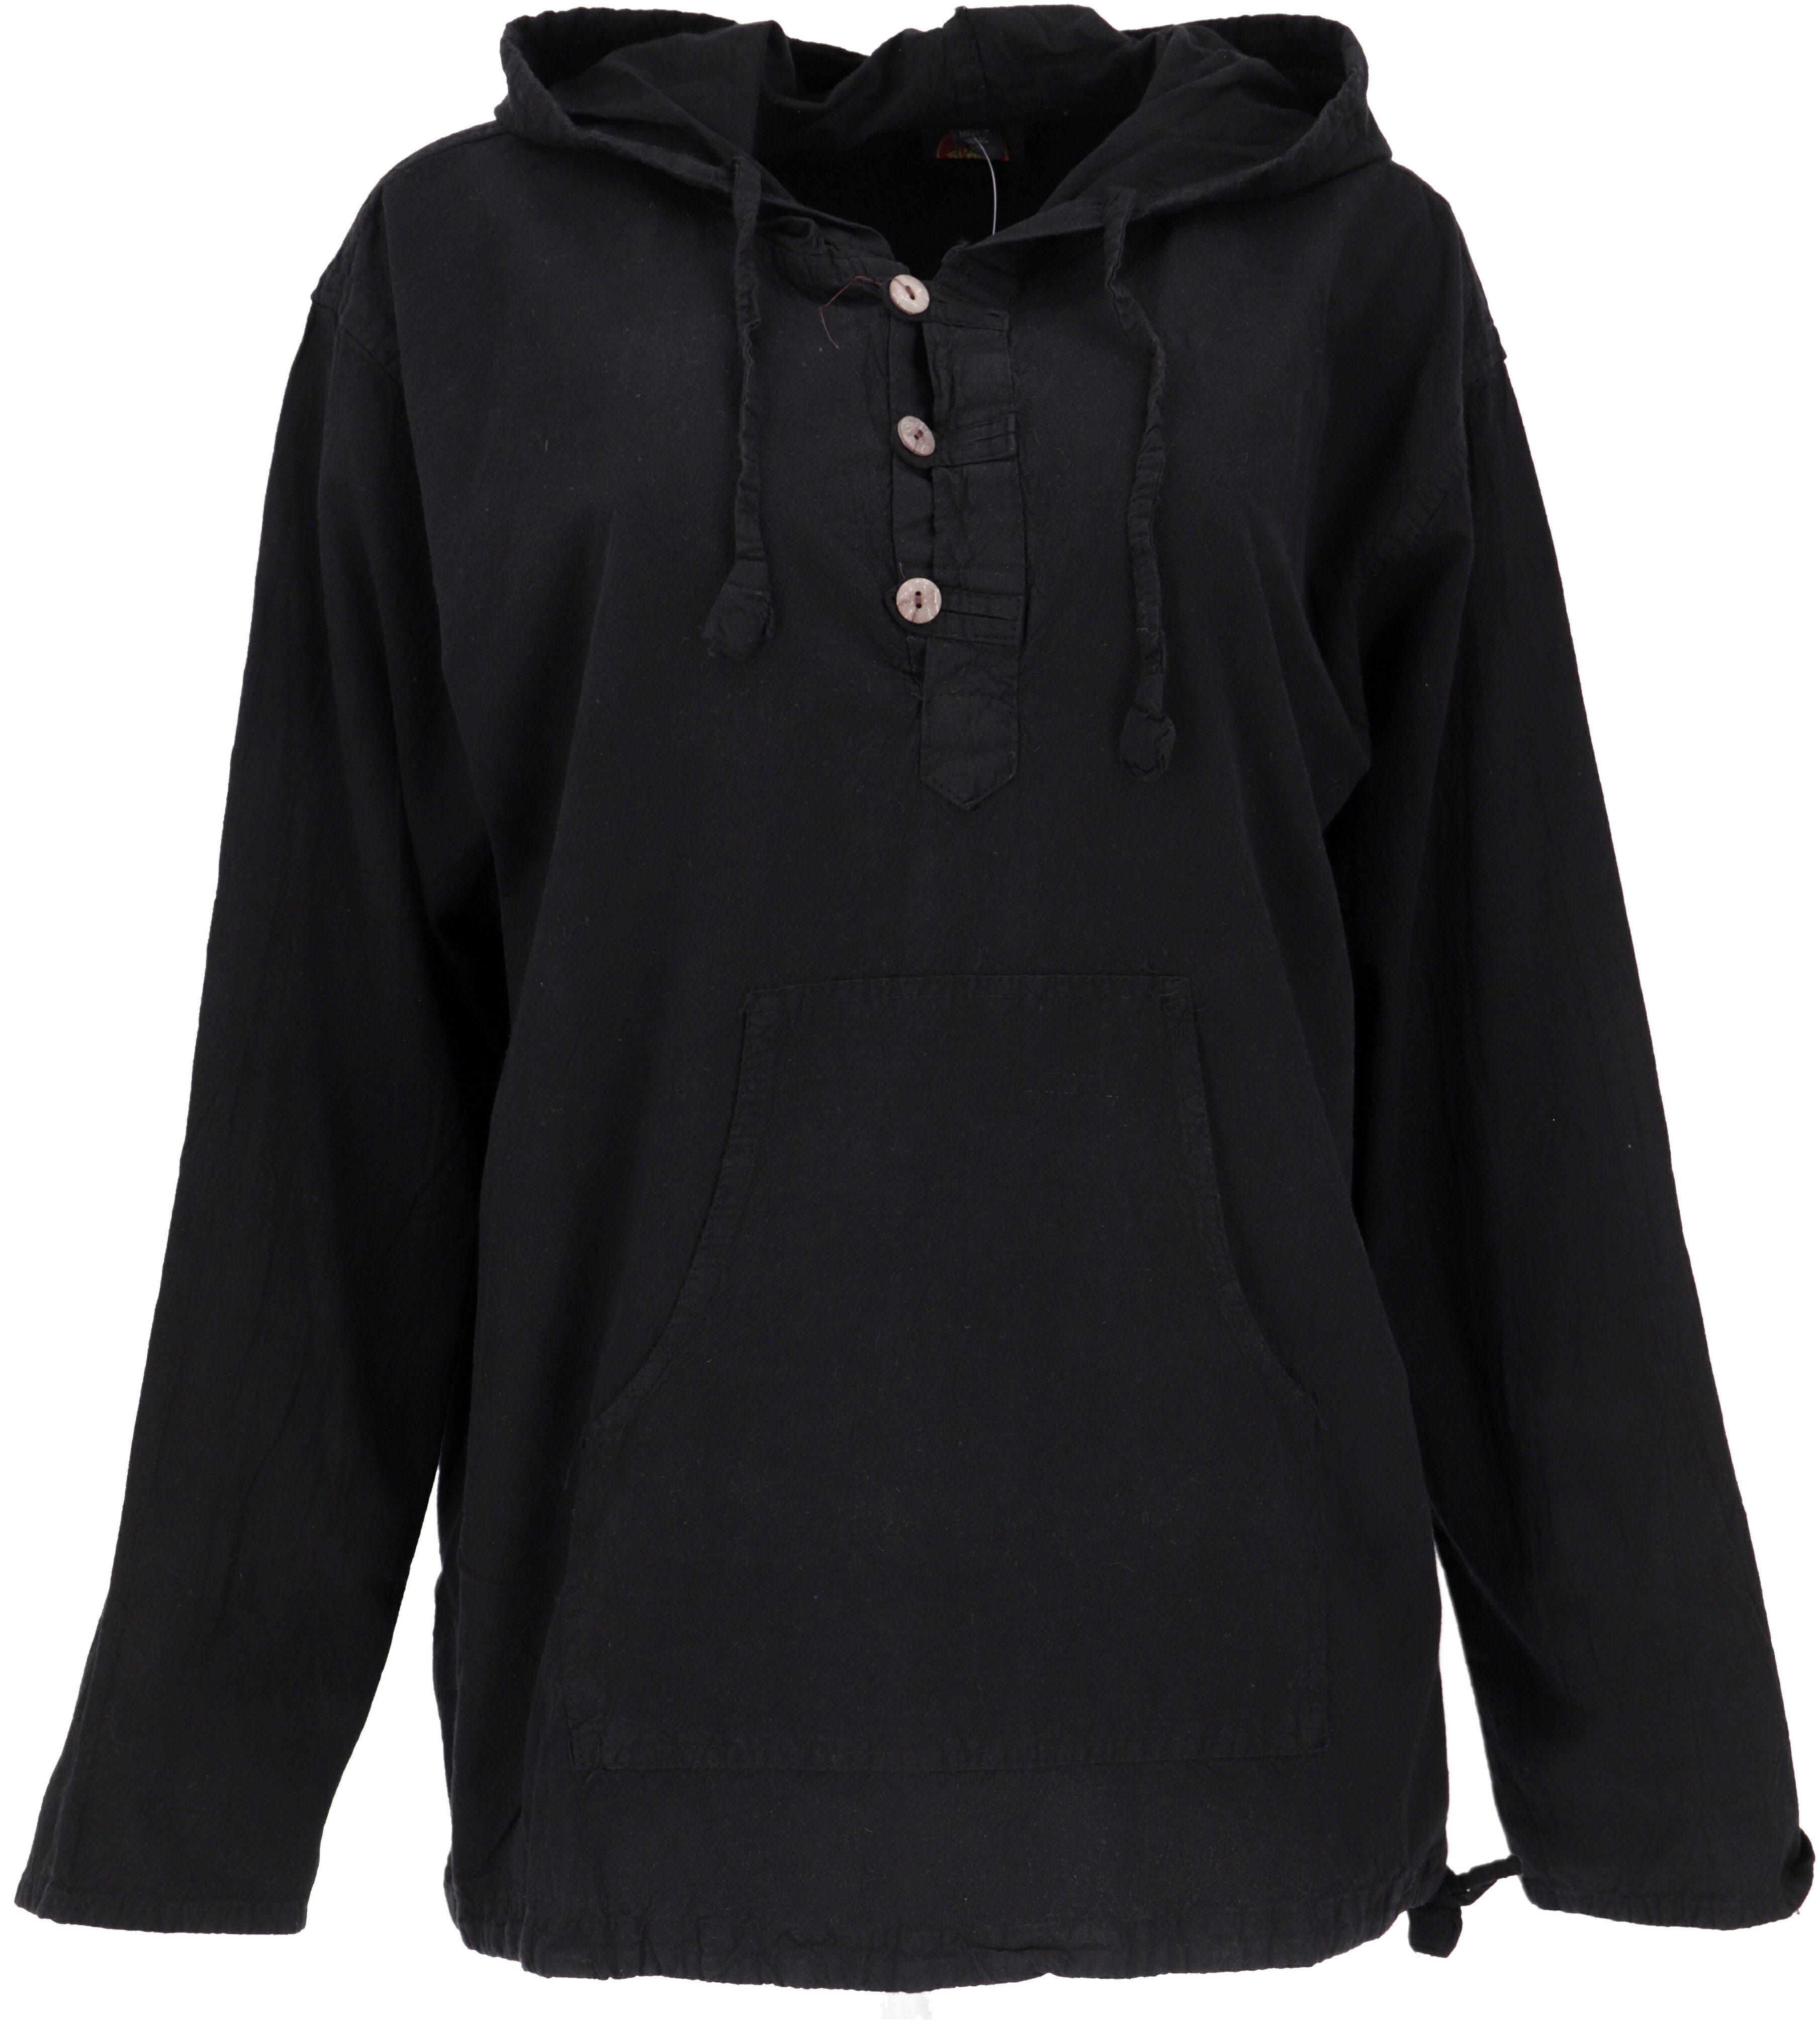 Guru-Shop Sweater Ethno Sweatshirt Goa Hippie - schwarz Ethno Style, alternative Bekleidung